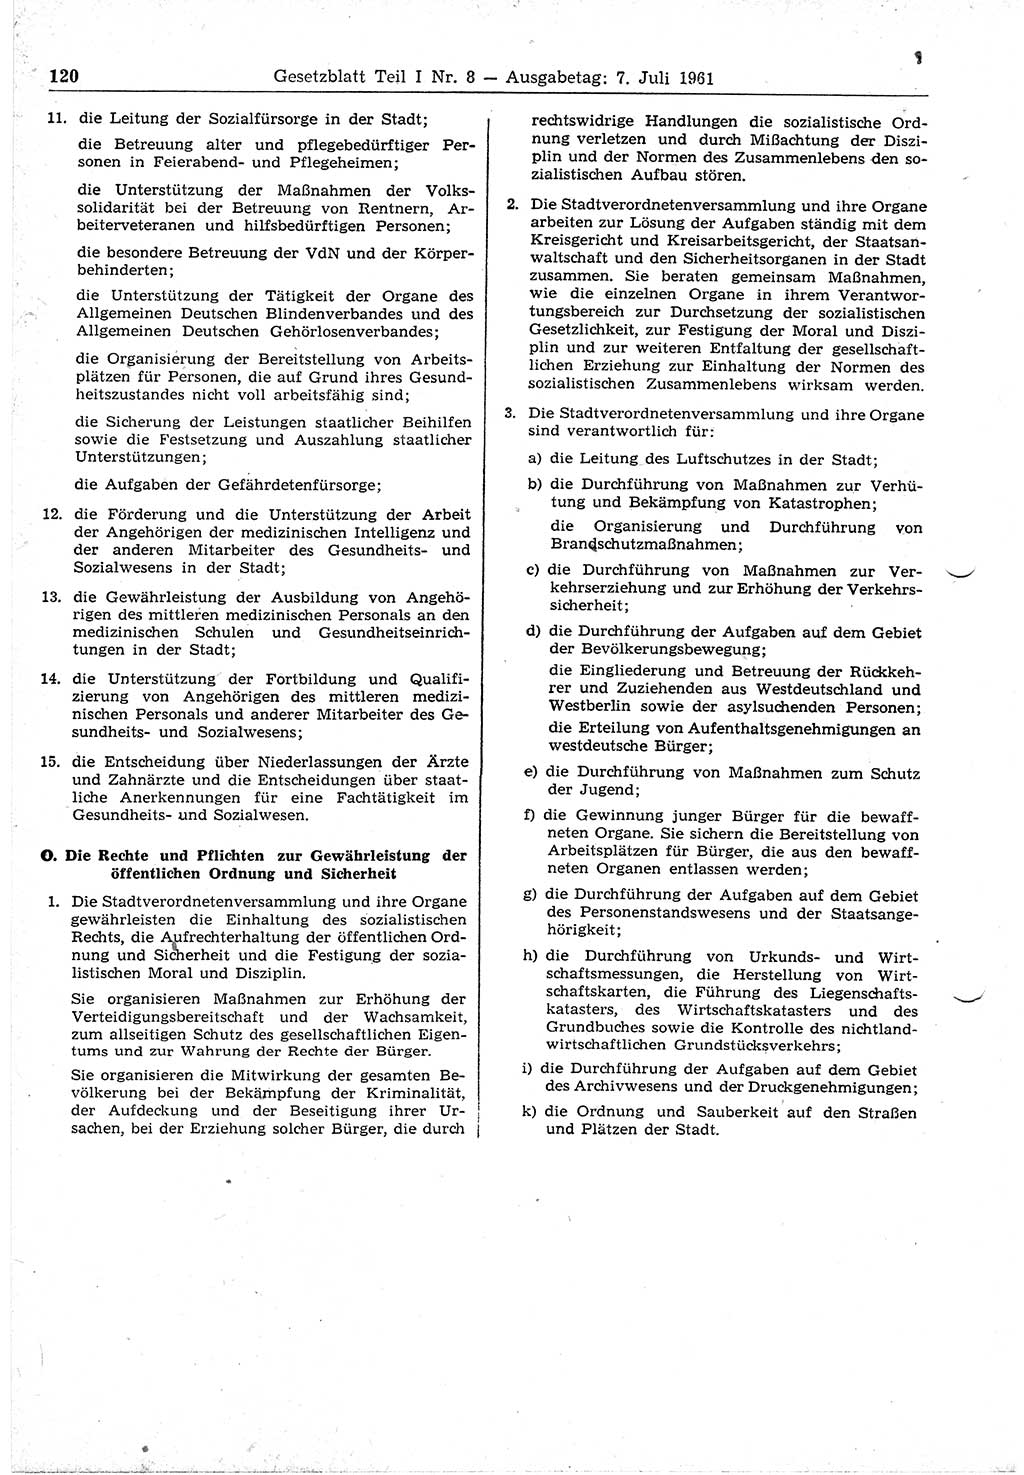 Gesetzblatt (GBl.) der Deutschen Demokratischen Republik (DDR) Teil Ⅰ 1961, Seite 120 (GBl. DDR Ⅰ 1961, S. 120)